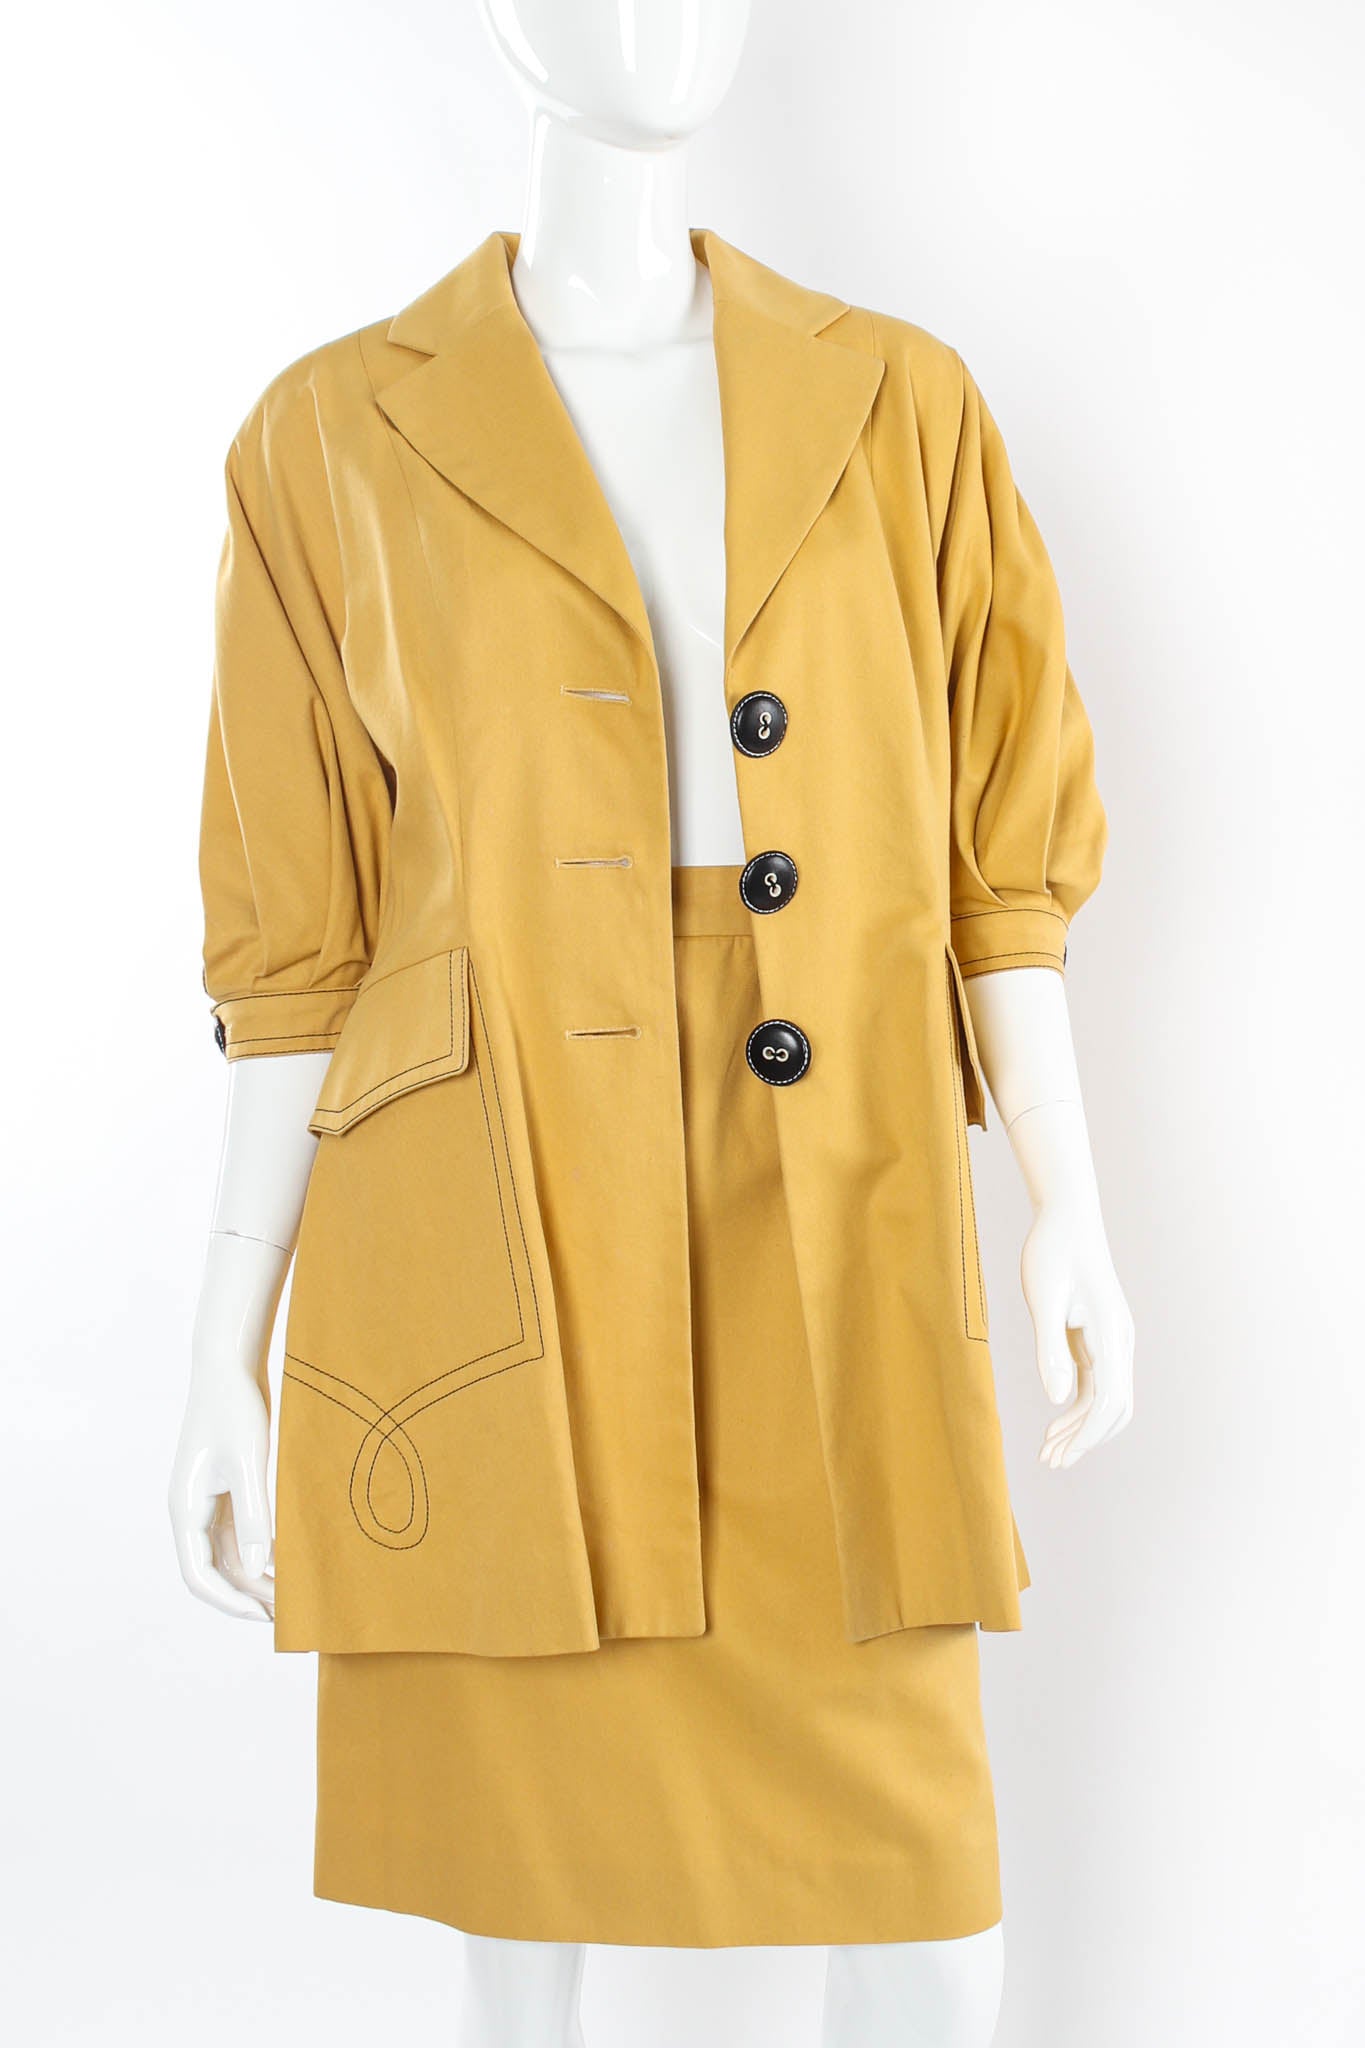 Vintage Christian Dior Golden Blazer & Skirt Suit Set close button open @ Recess Los Angeles